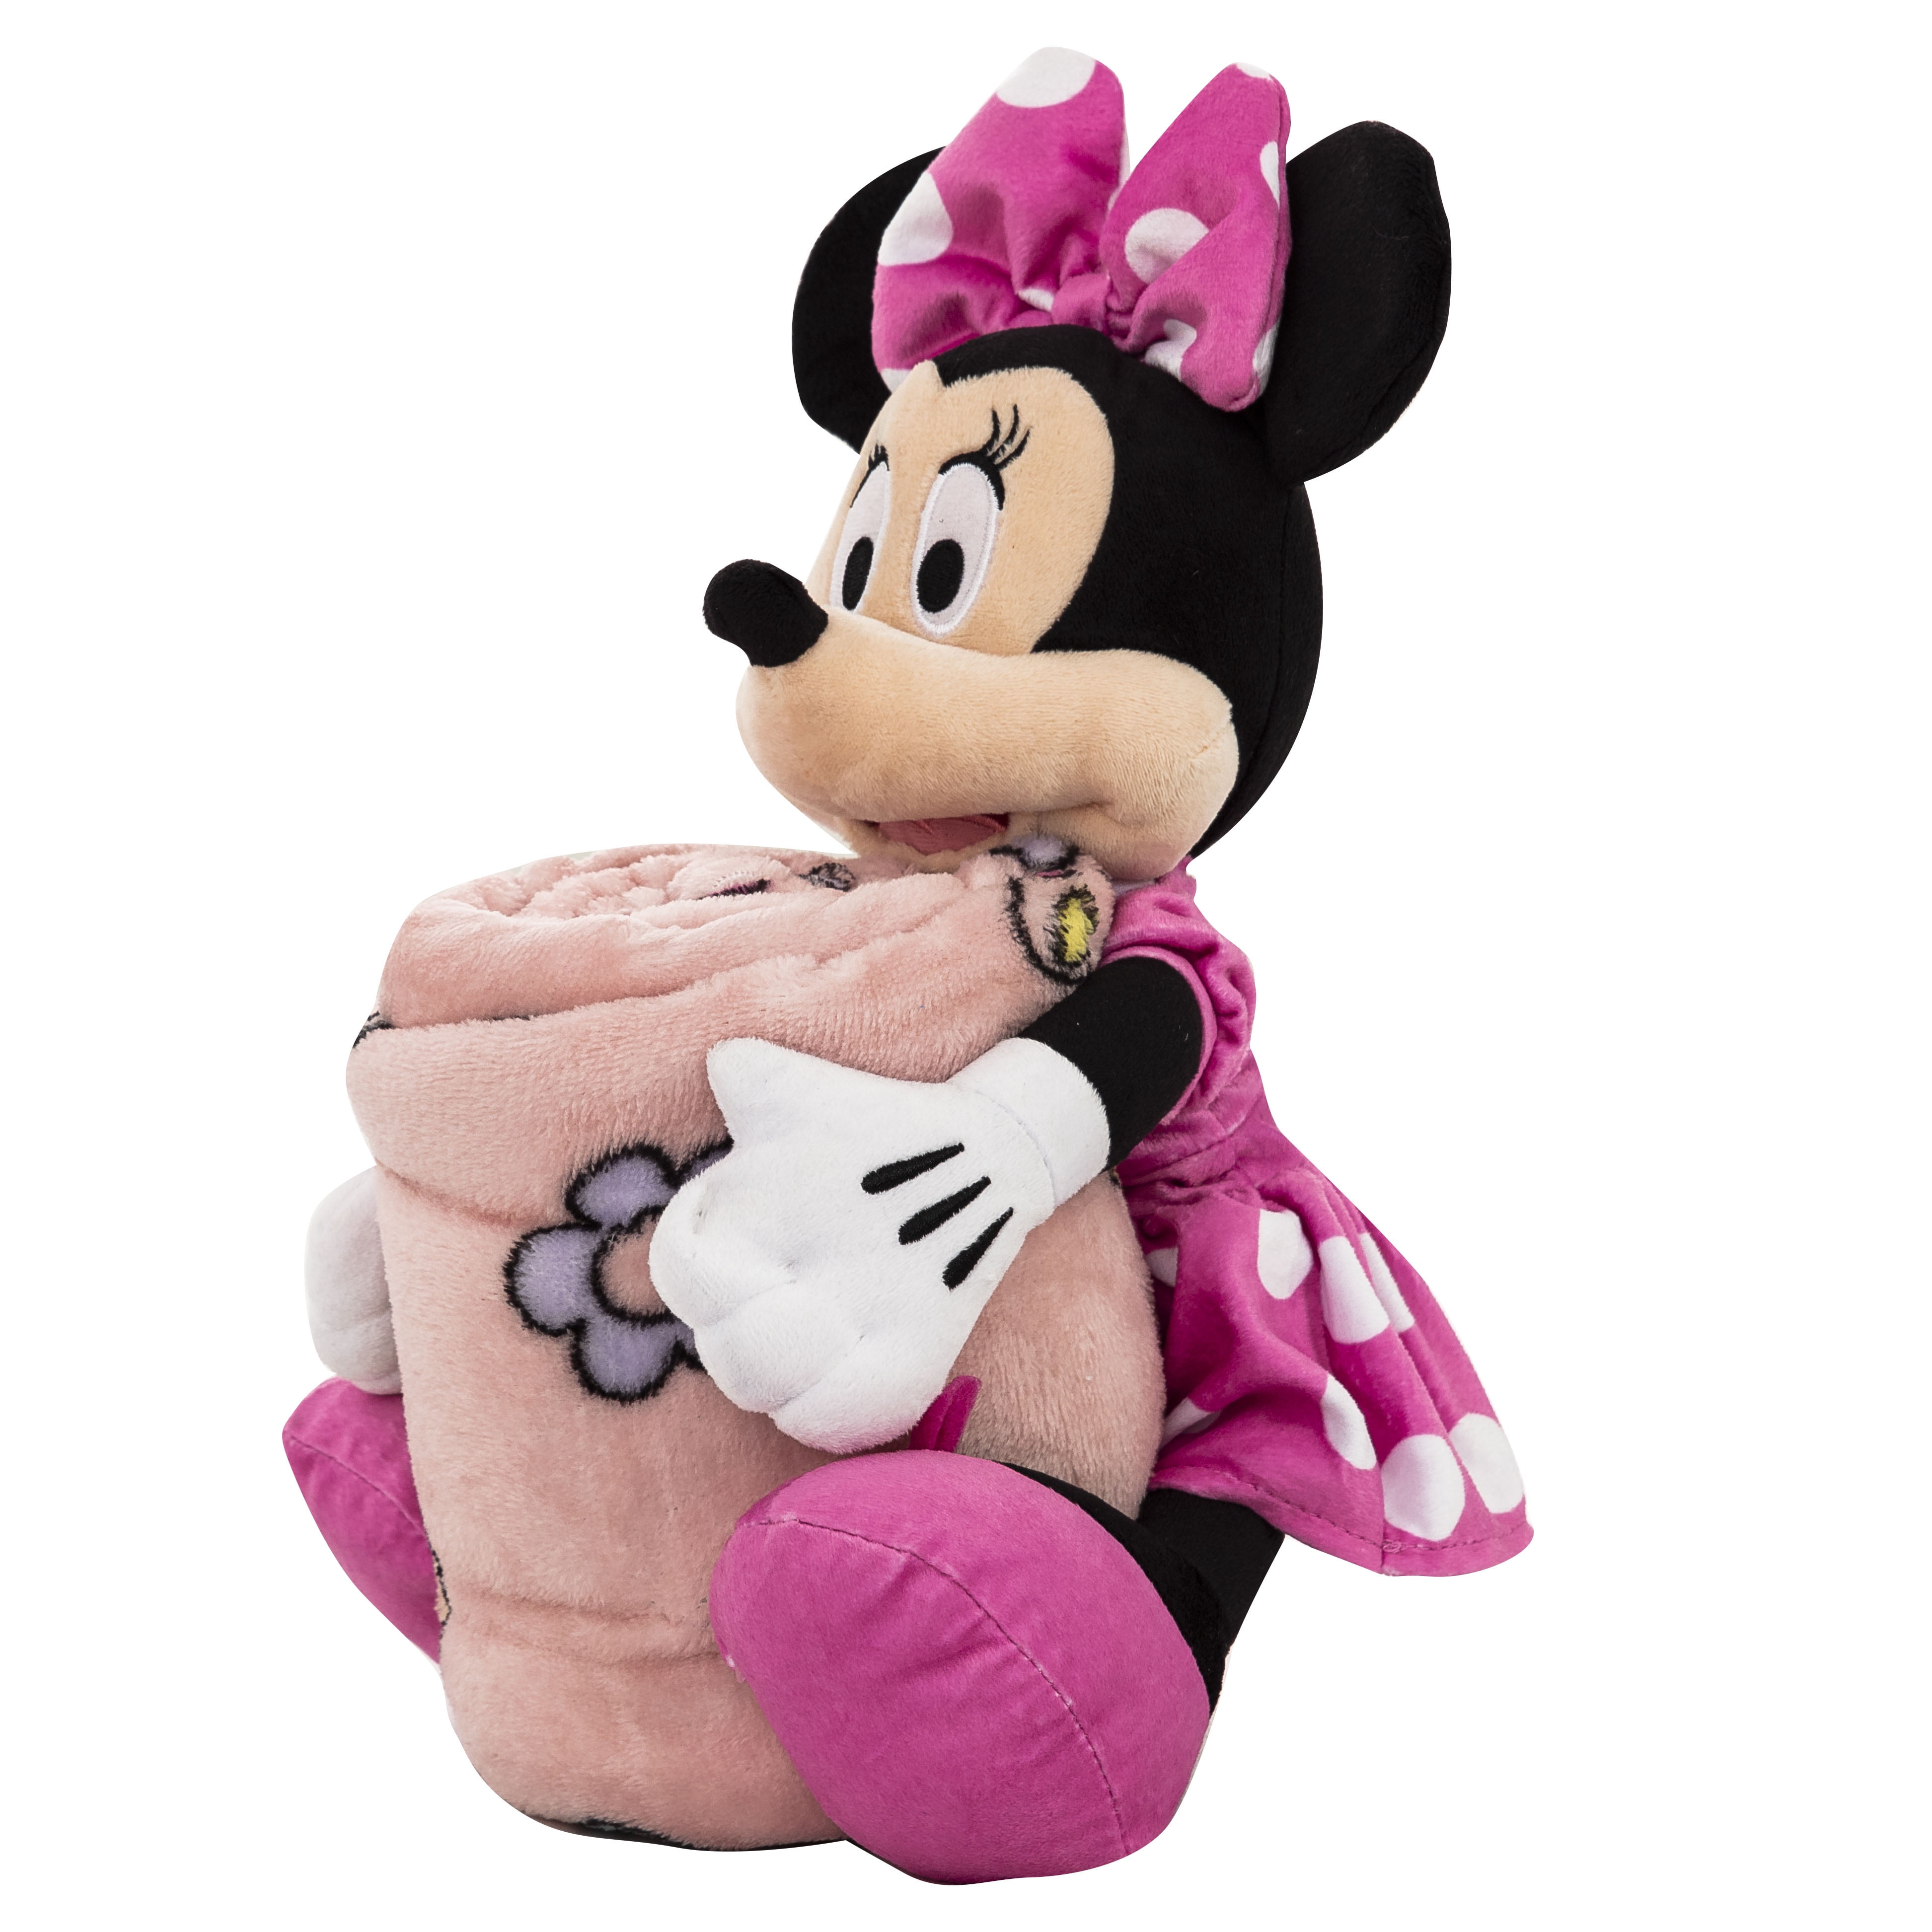 Disney Minnie Mouse 45" x 60" Throw Blanket w/ Girls Minnie 11" Plush Doll 